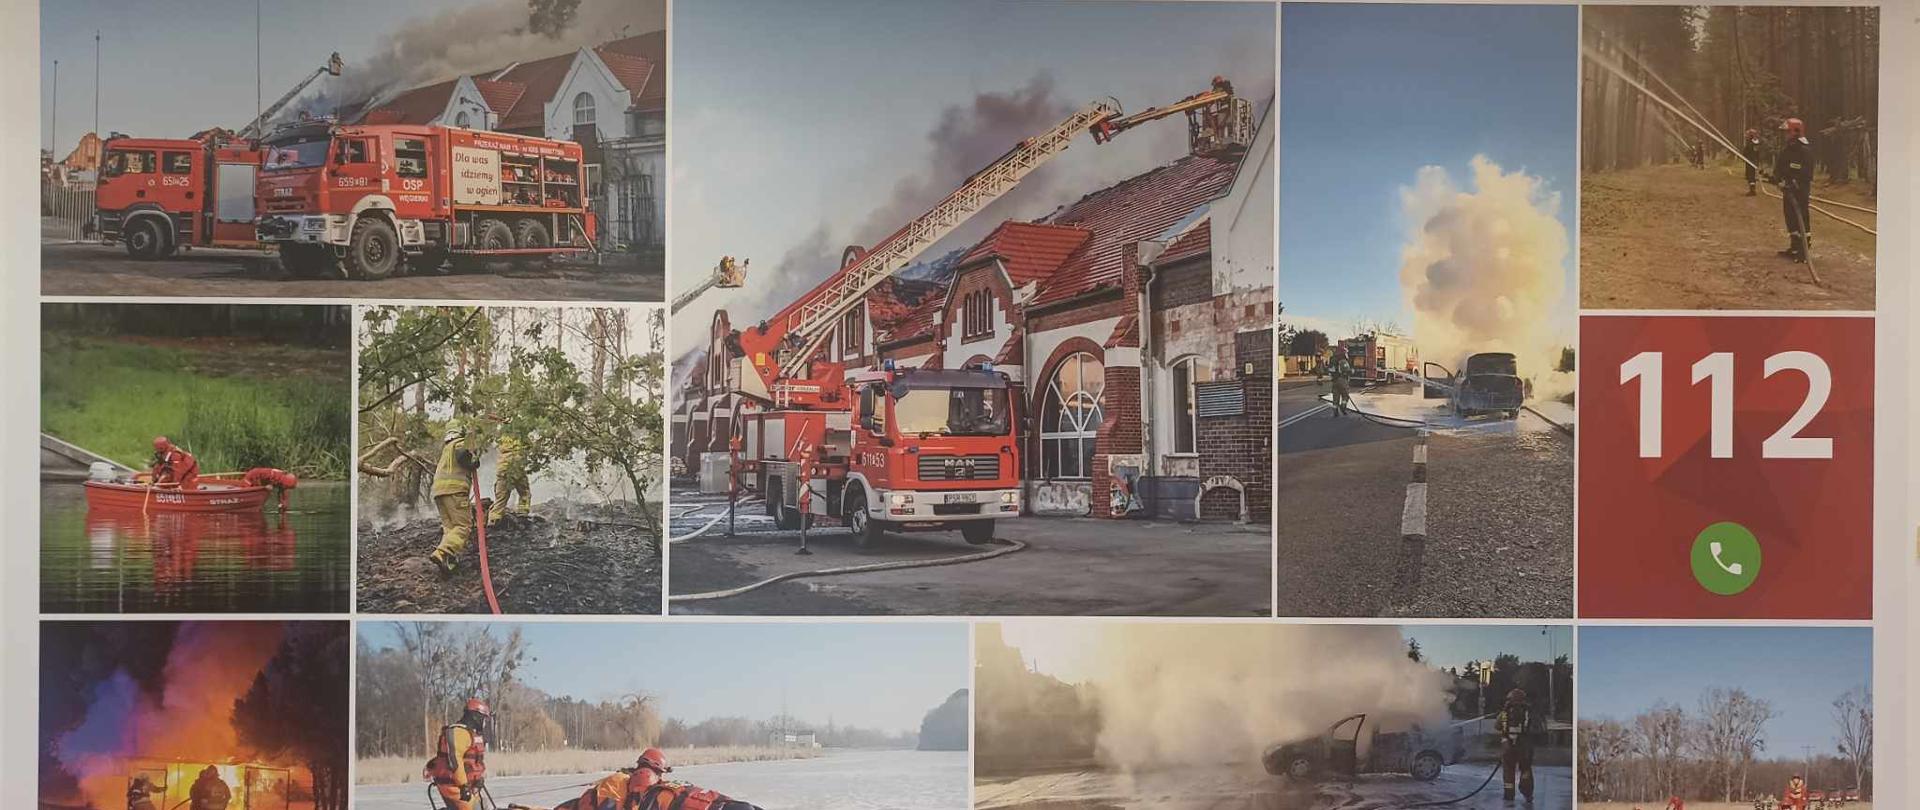 Zdjęcie przedstawia fototapetę na ścianie ze zdjęciami: pożarów, akcji na lodzie, ćwiczeń i z numerem alarmowym 112